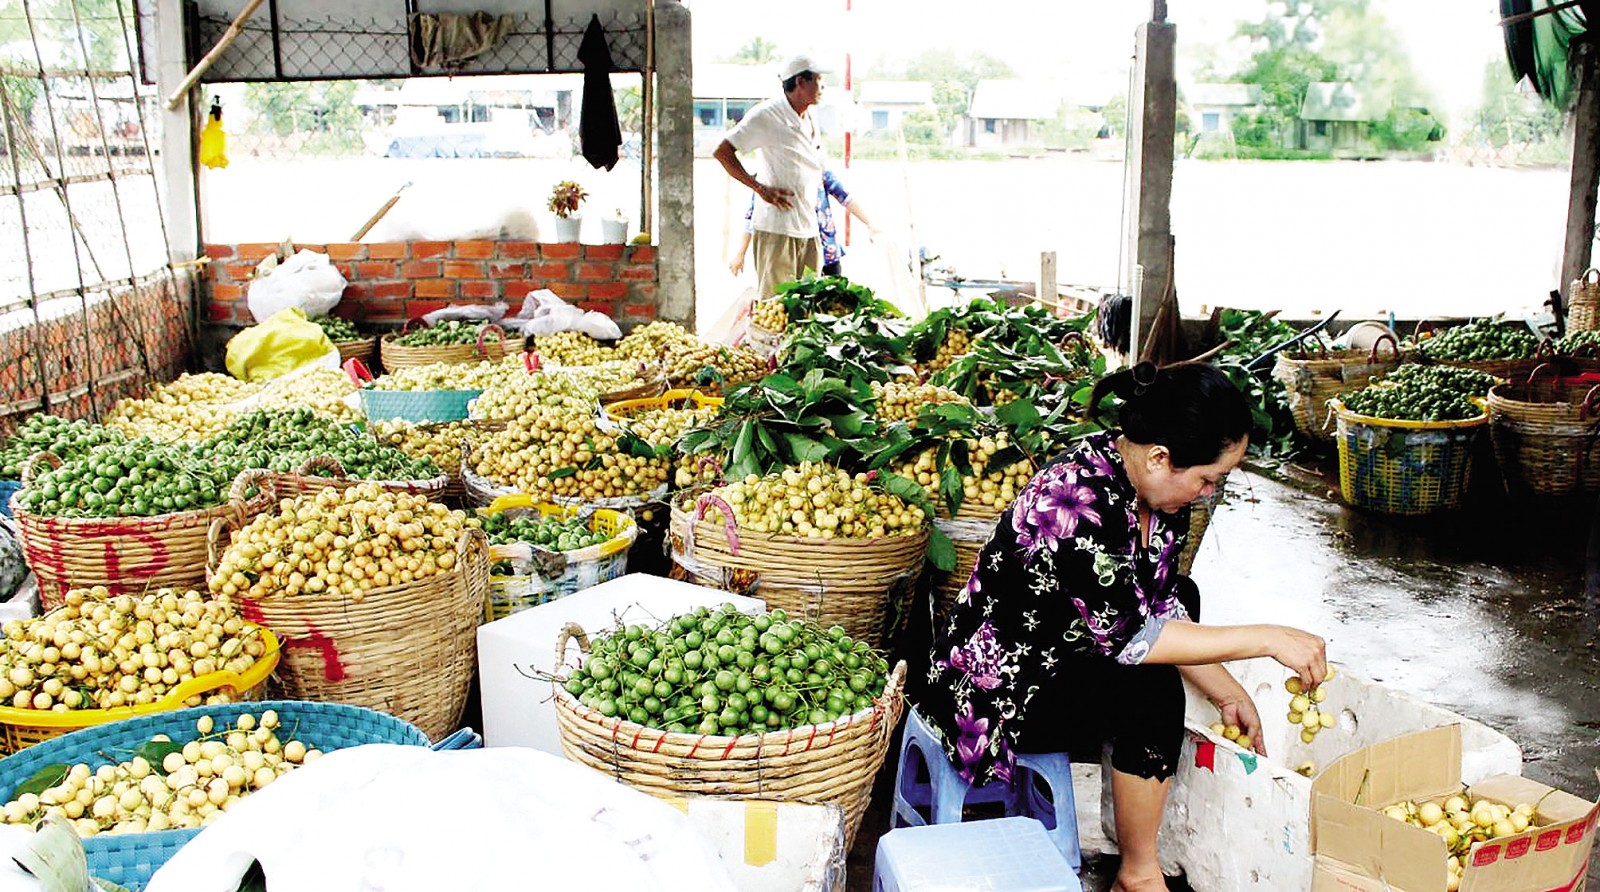 Hiện nhiều loại trái cây và nông sản nói chung được tiêu thụ chủ yếu ở dạng tươi, thô. Trong ảnh: Trái cây được thu mua,tập kết tại một vựa thu mua trái cây ở huyện Phong Điền, TP Cần Thơ.